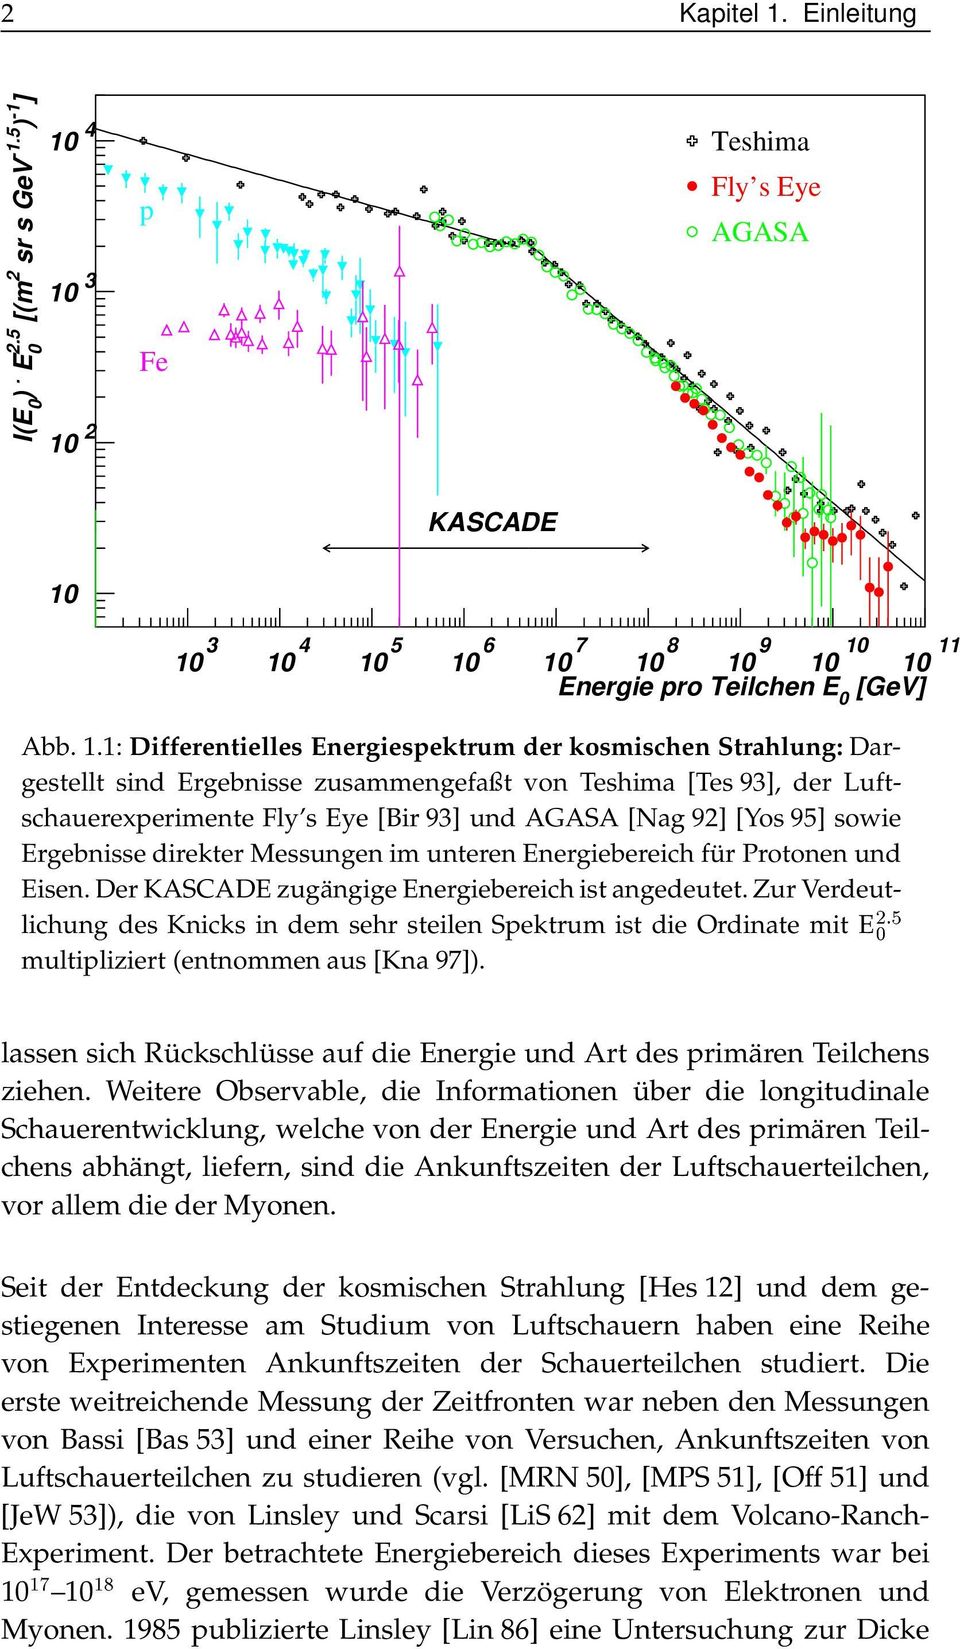 4 1 3 1 2 p Fe Teshima Fly s Eye AGASA KASCADE 1 1 3 1 4 1 5 1 6 1 7 1 8 1 9 1 1 1 11 Energie pro Teilchen E [GeV] Abb. 1.1: Differentielles Energiespektrum der kosmischen Strahlung: Dargestellt sind